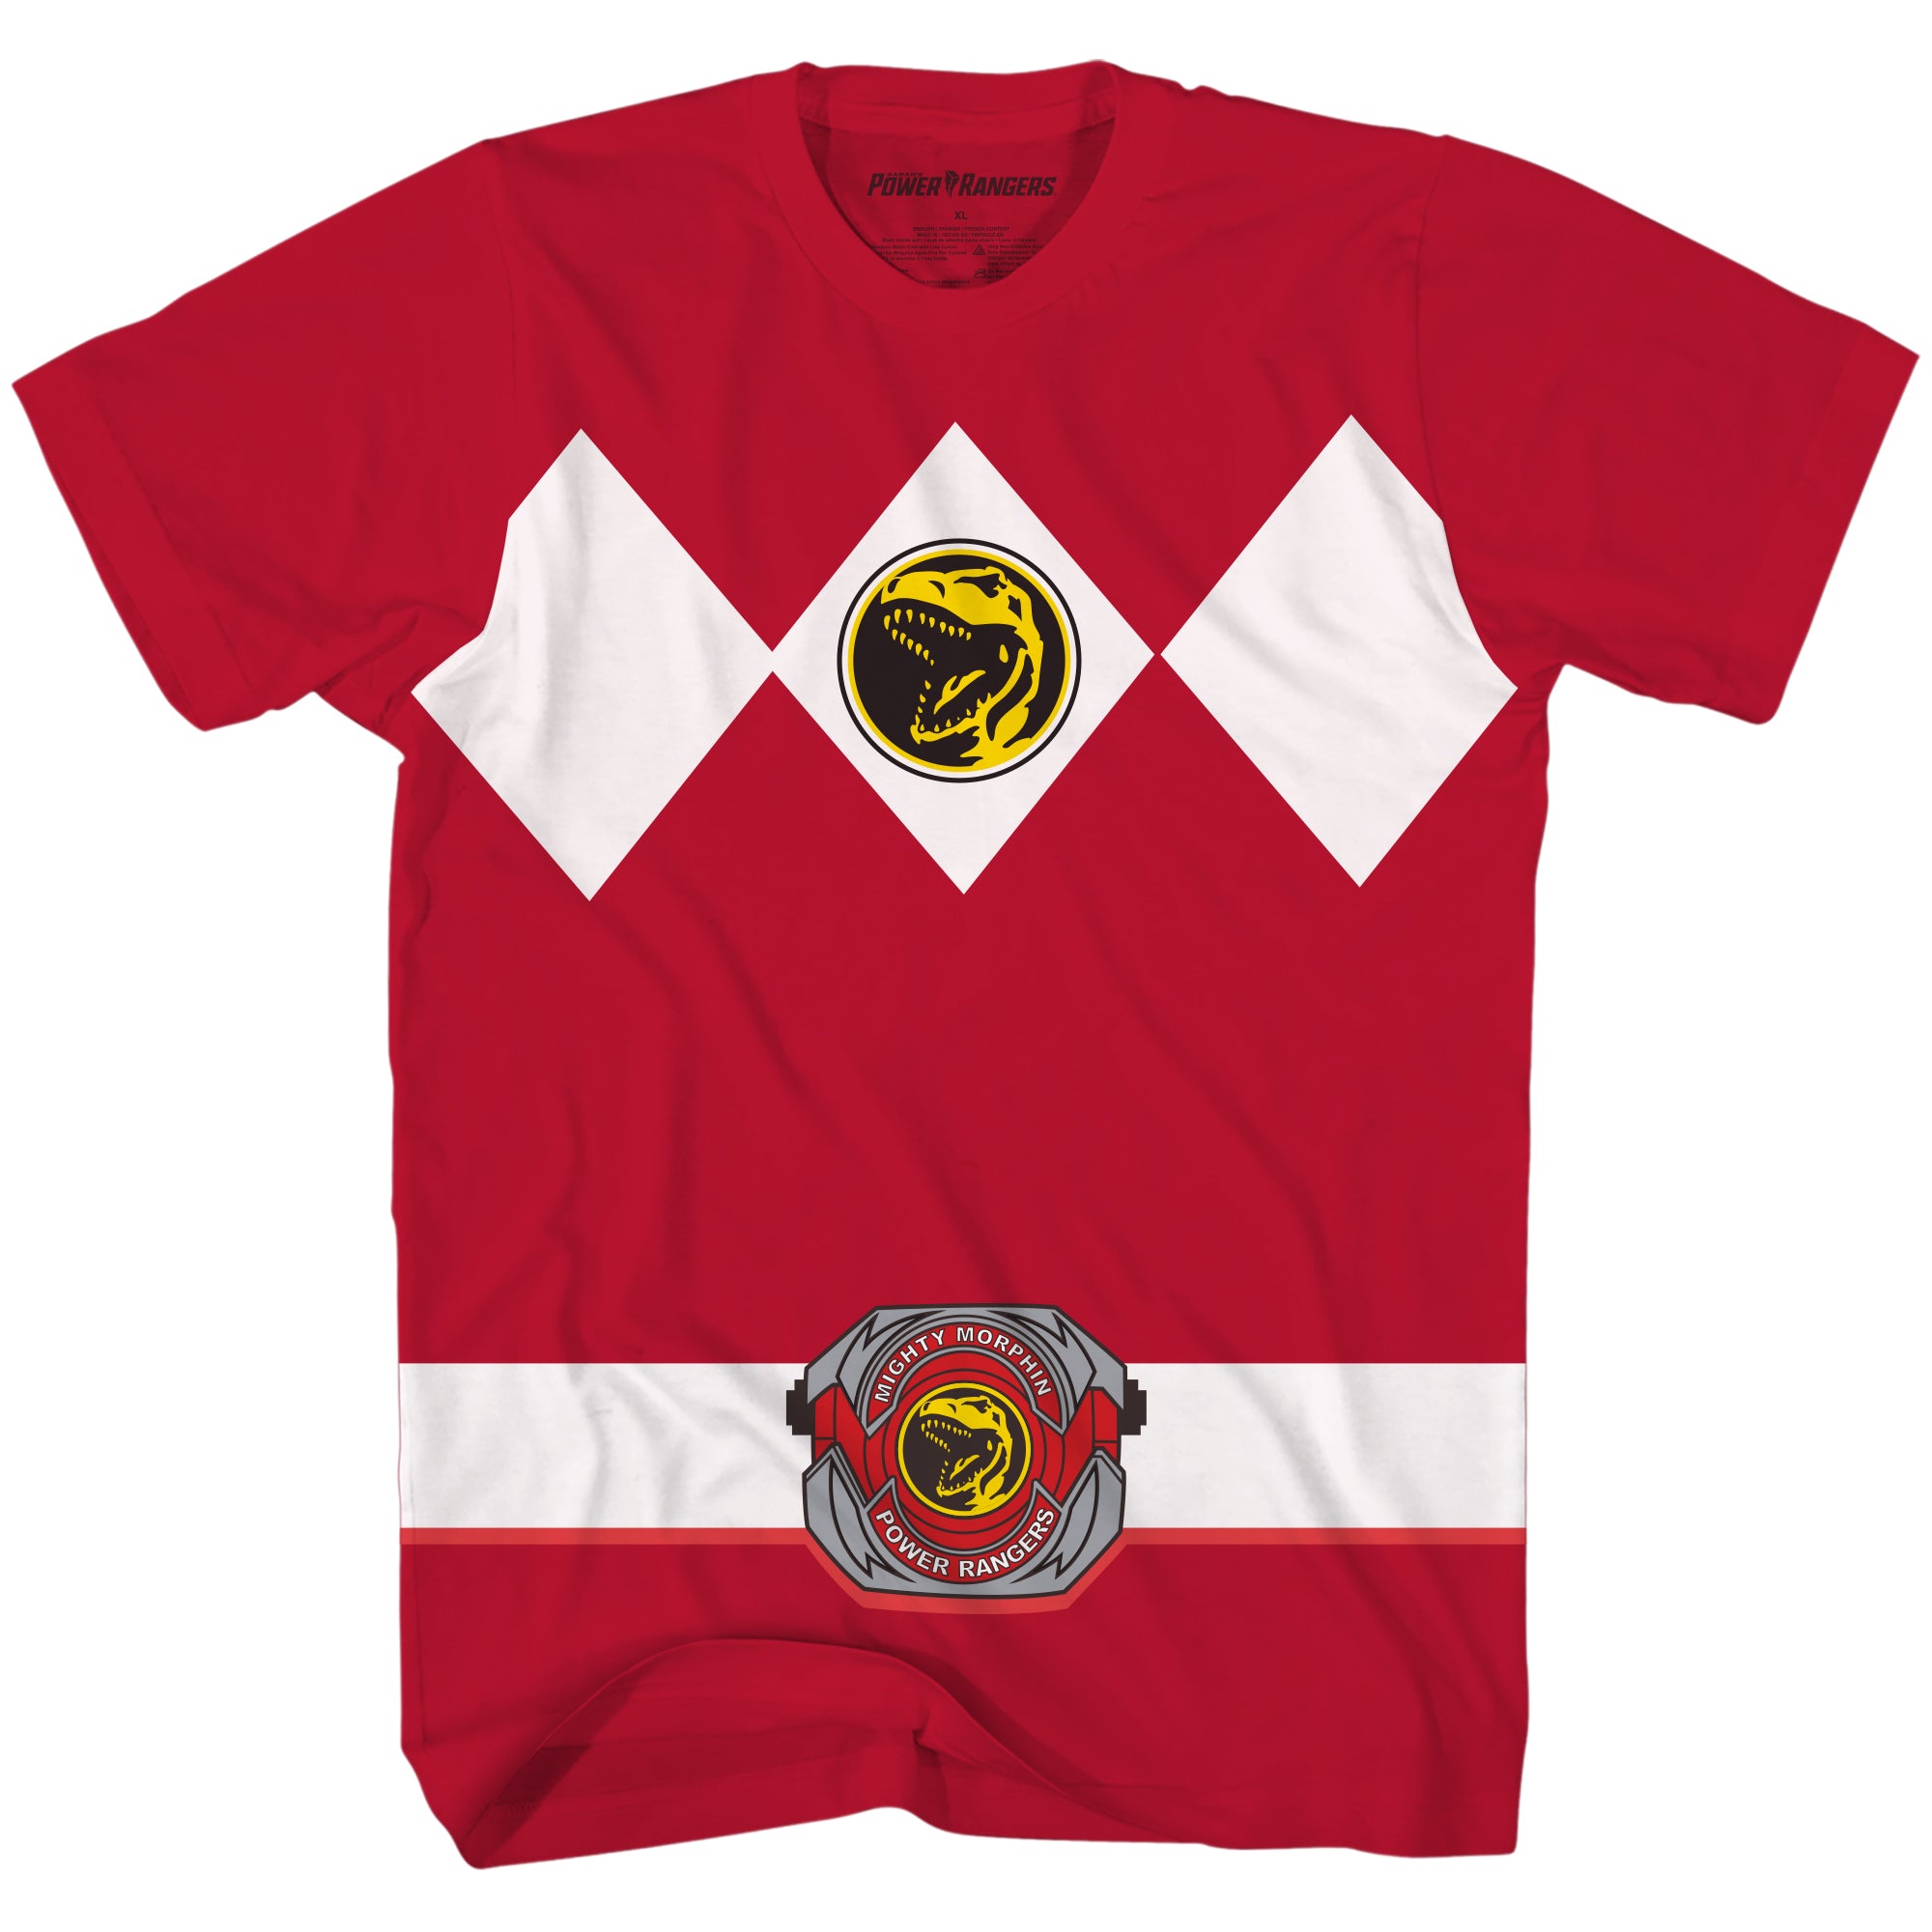 Power Rangers Red T-Shirt